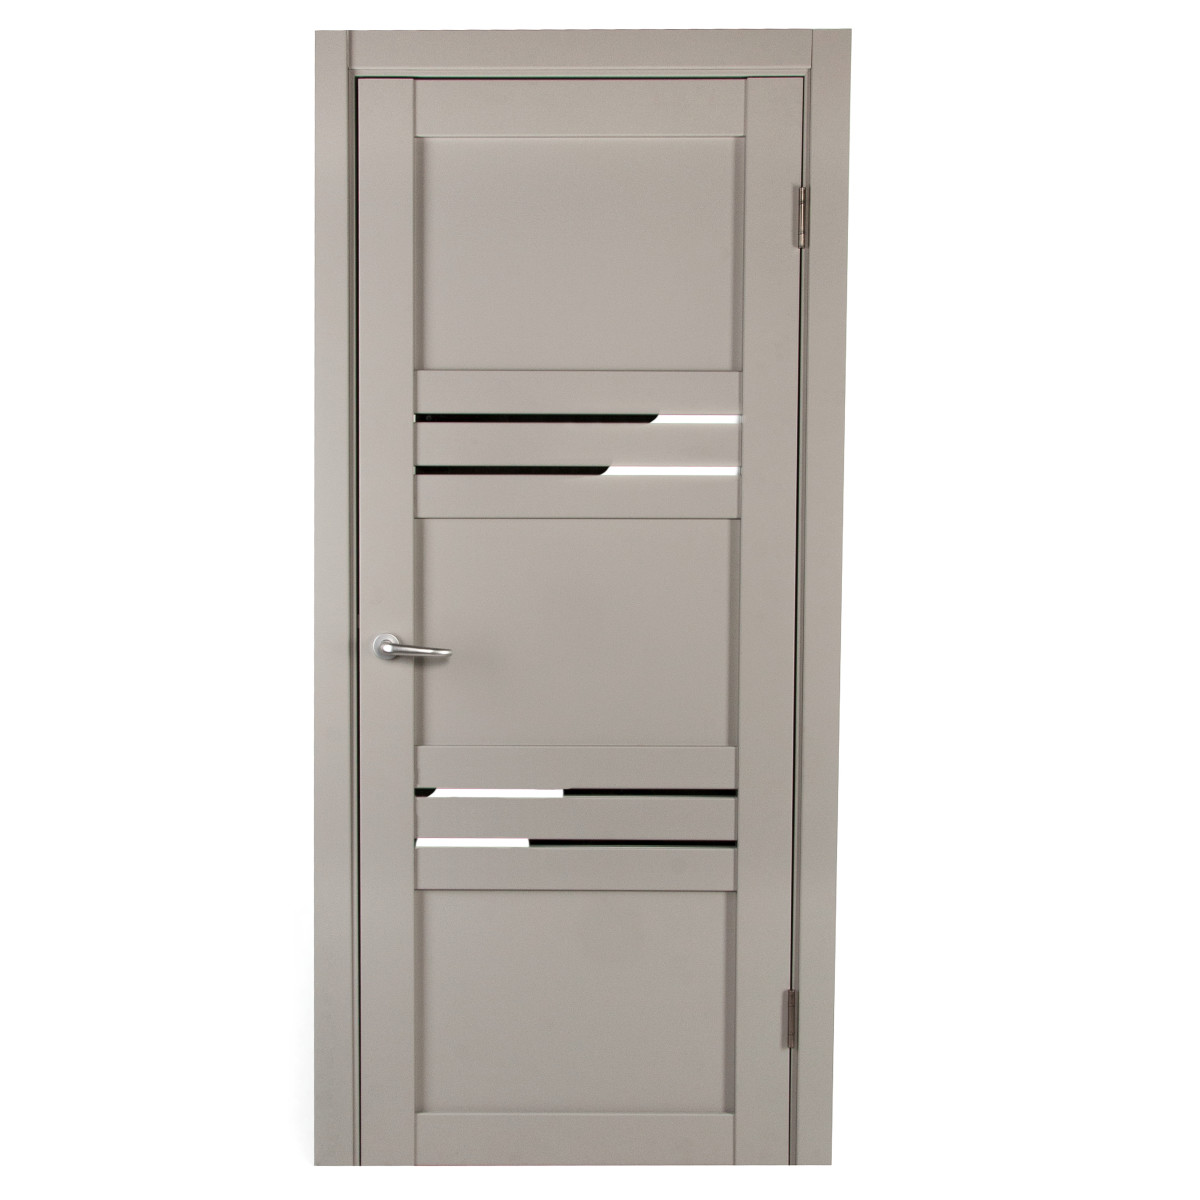 Дверь межкомнатная с фурнитурой Астерия 90х200 см, Hardflex, цвет серый жемчуг